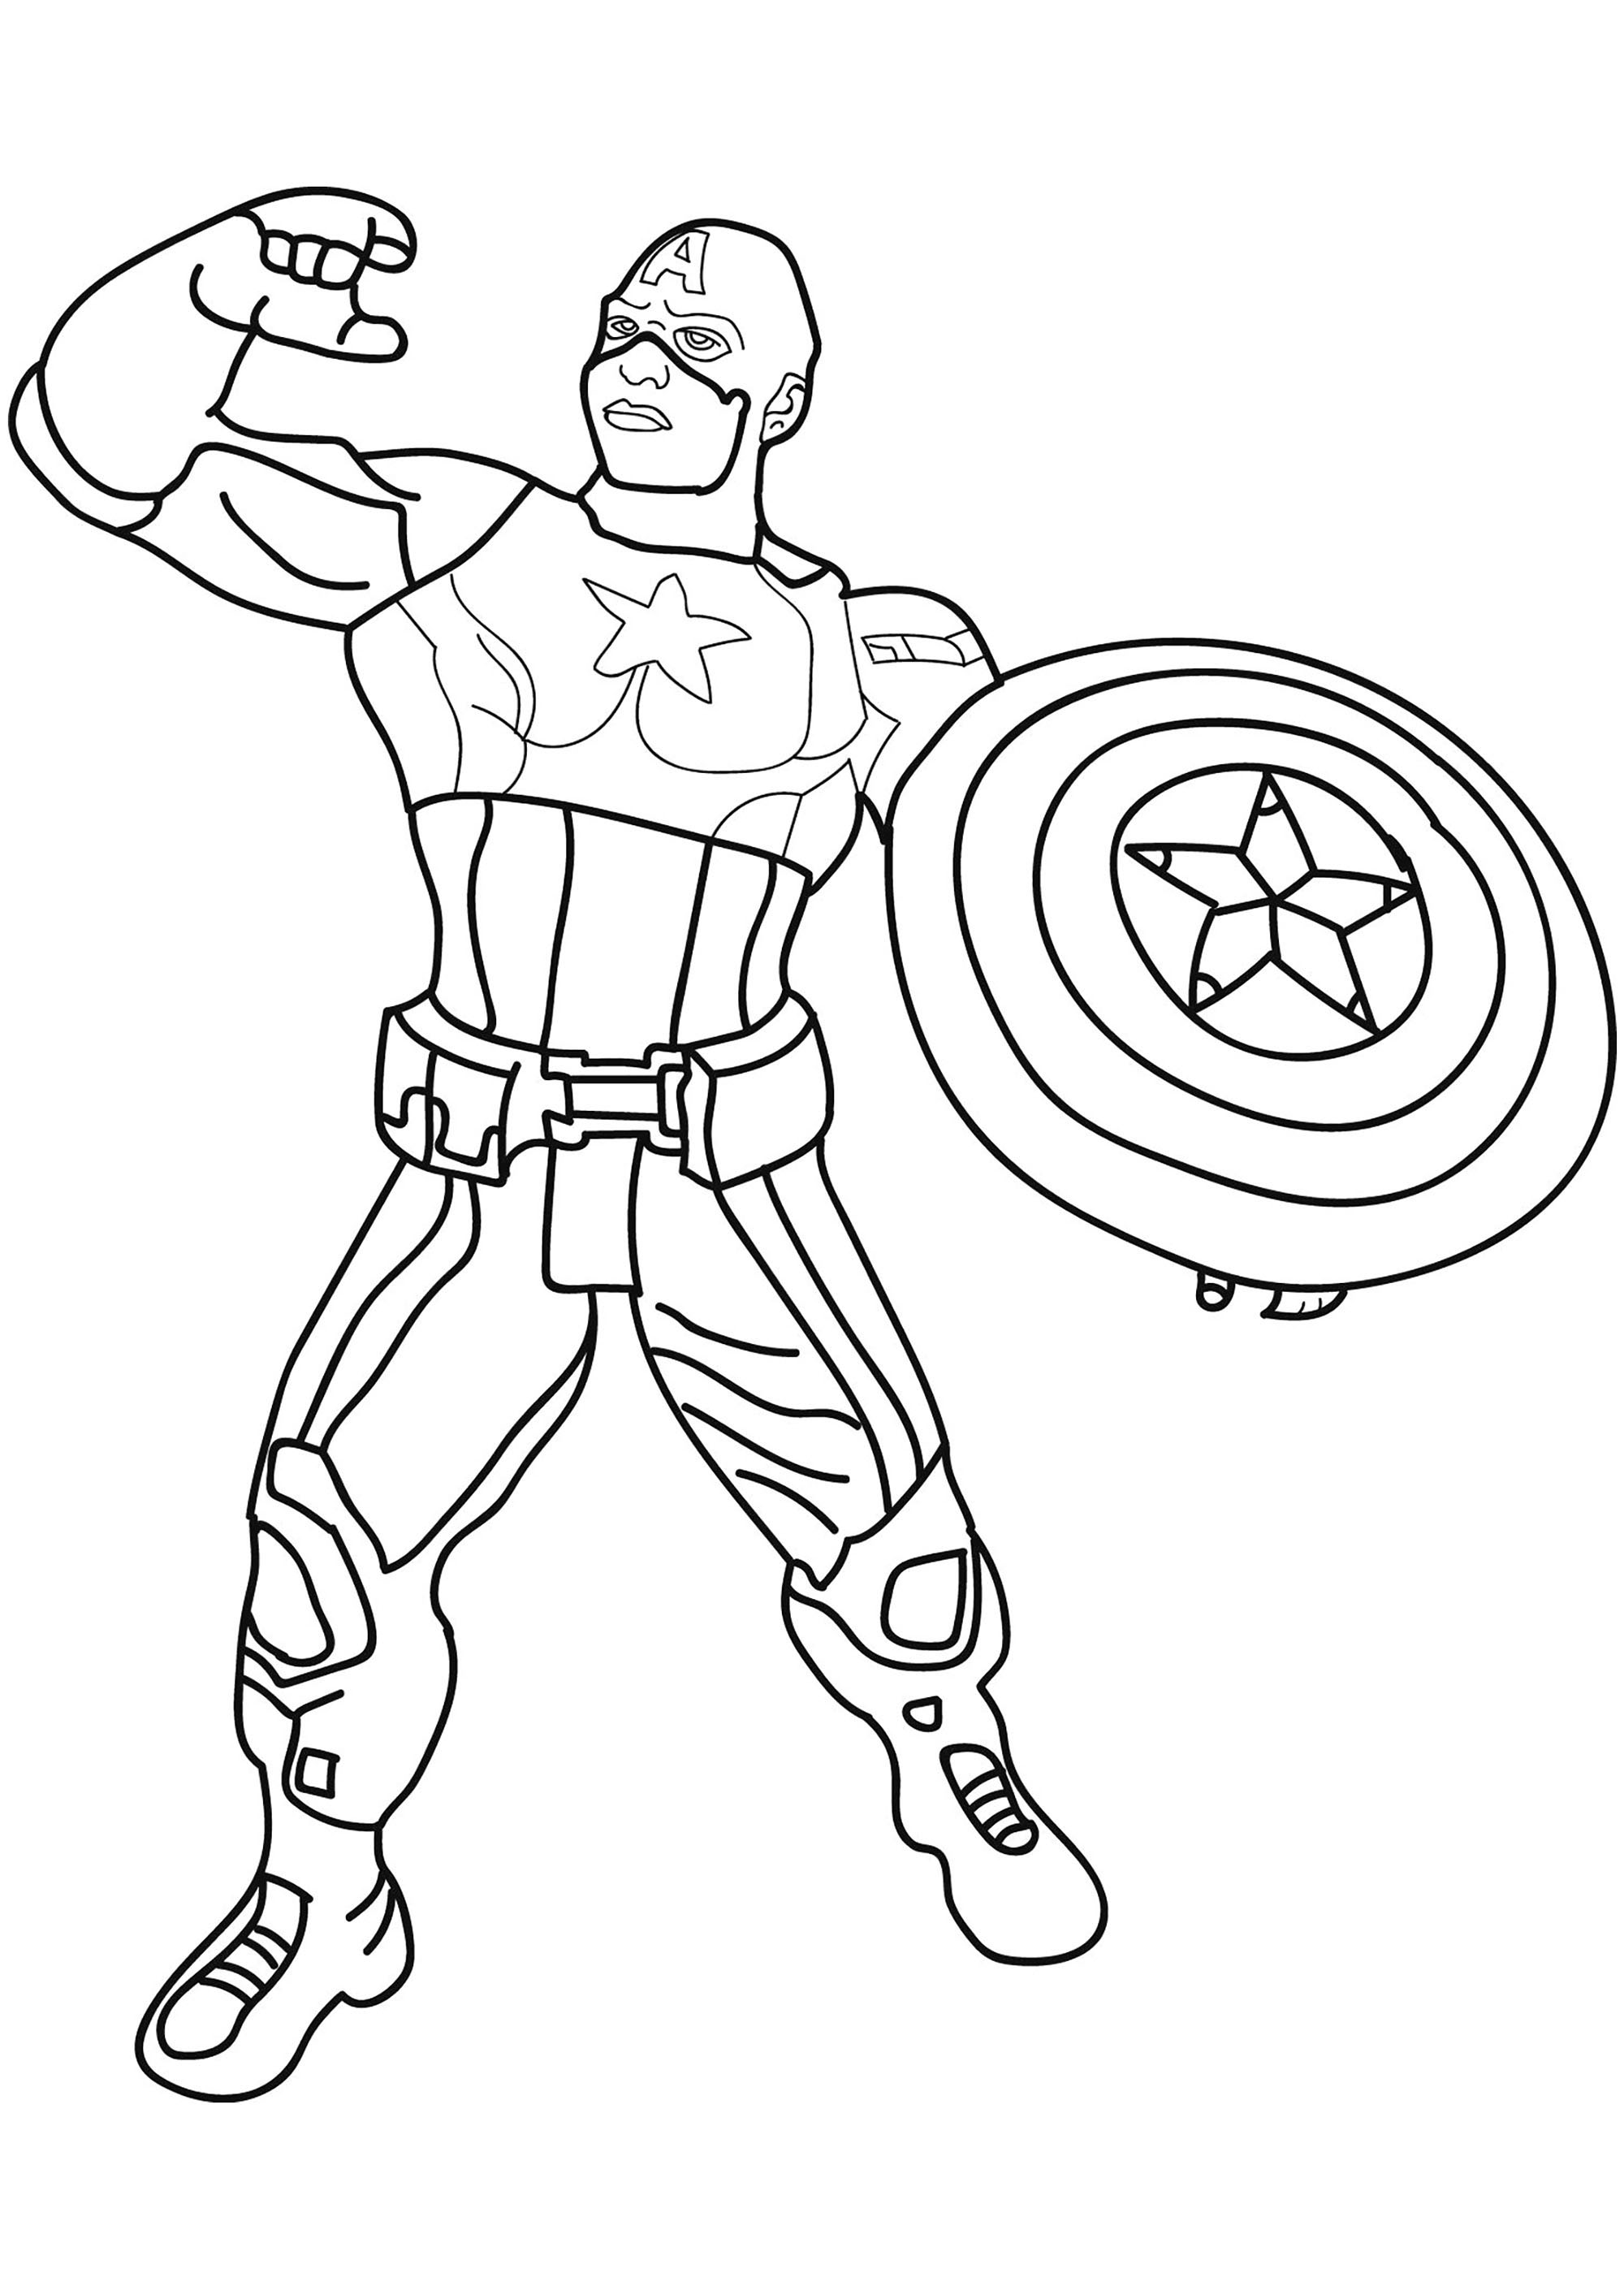 Captain America desenho para descarregar e imprimir para crianças